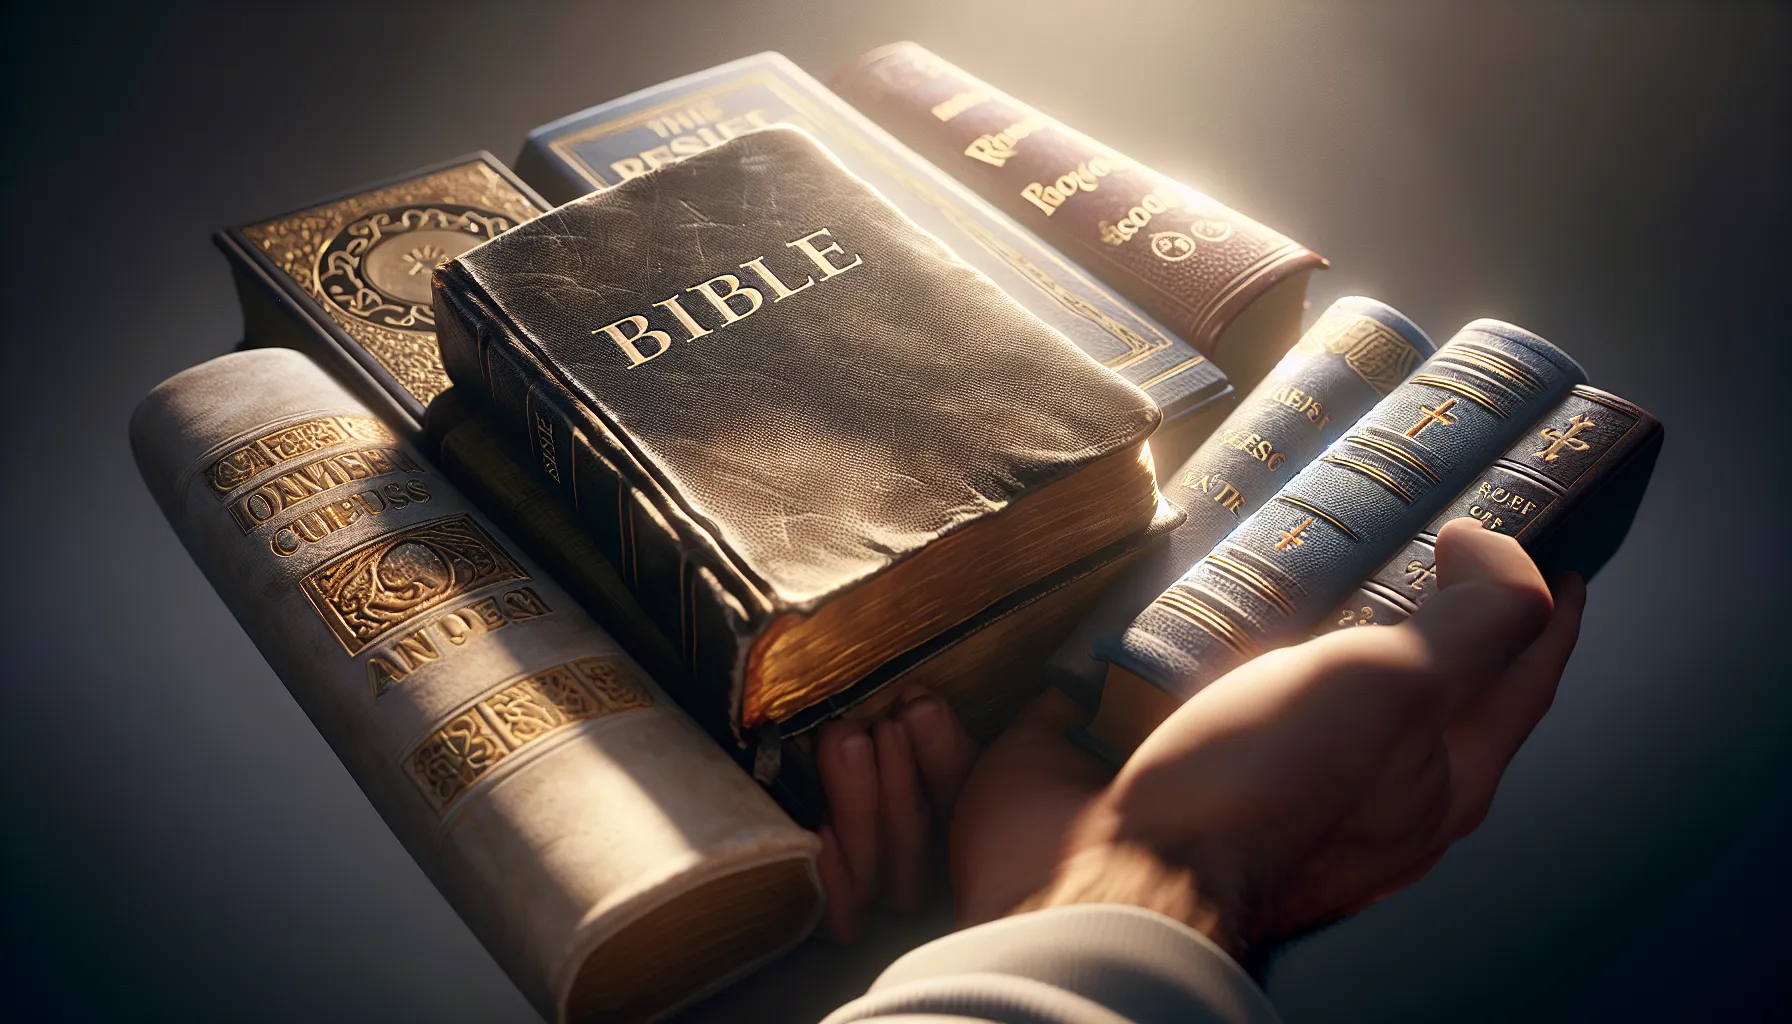 Comparación de religiones: análisis de la Biblia sobre la verdadera fe'